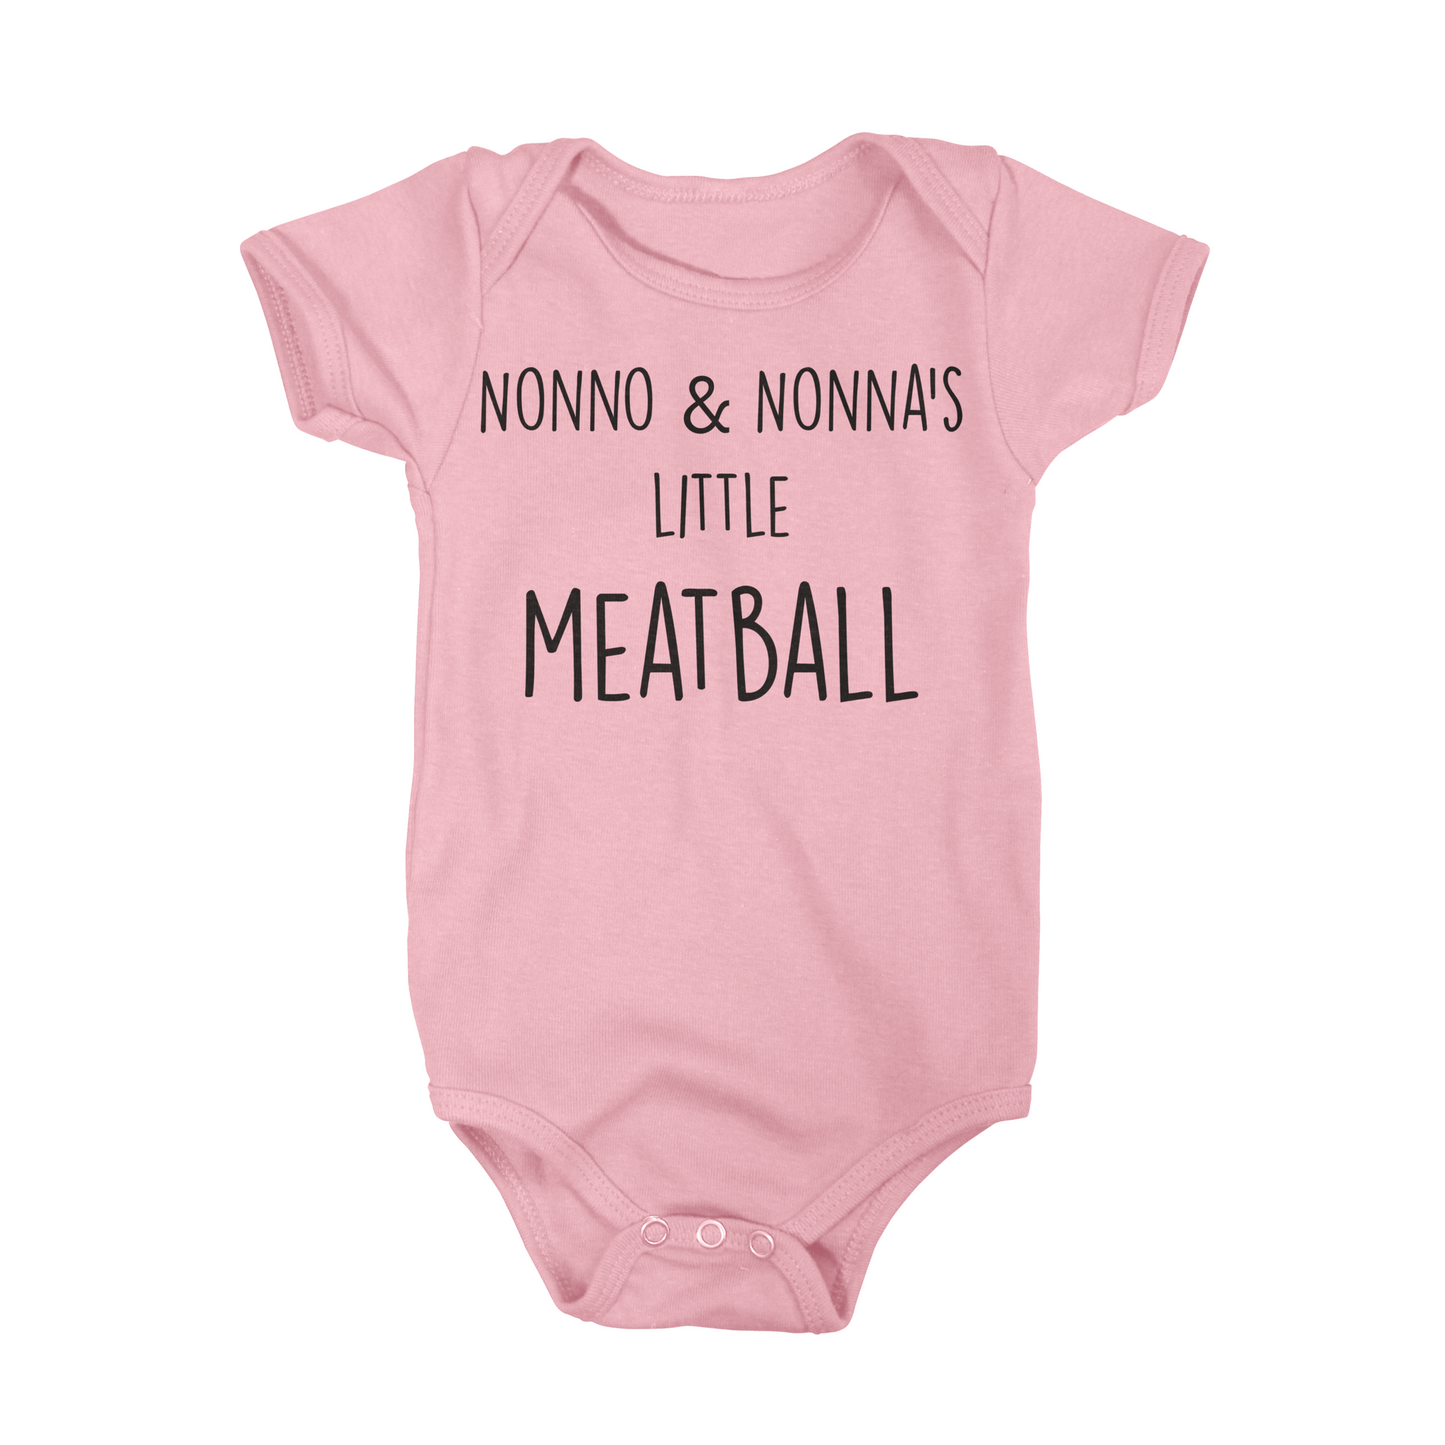 Nonno & Nonna's Little Meatball